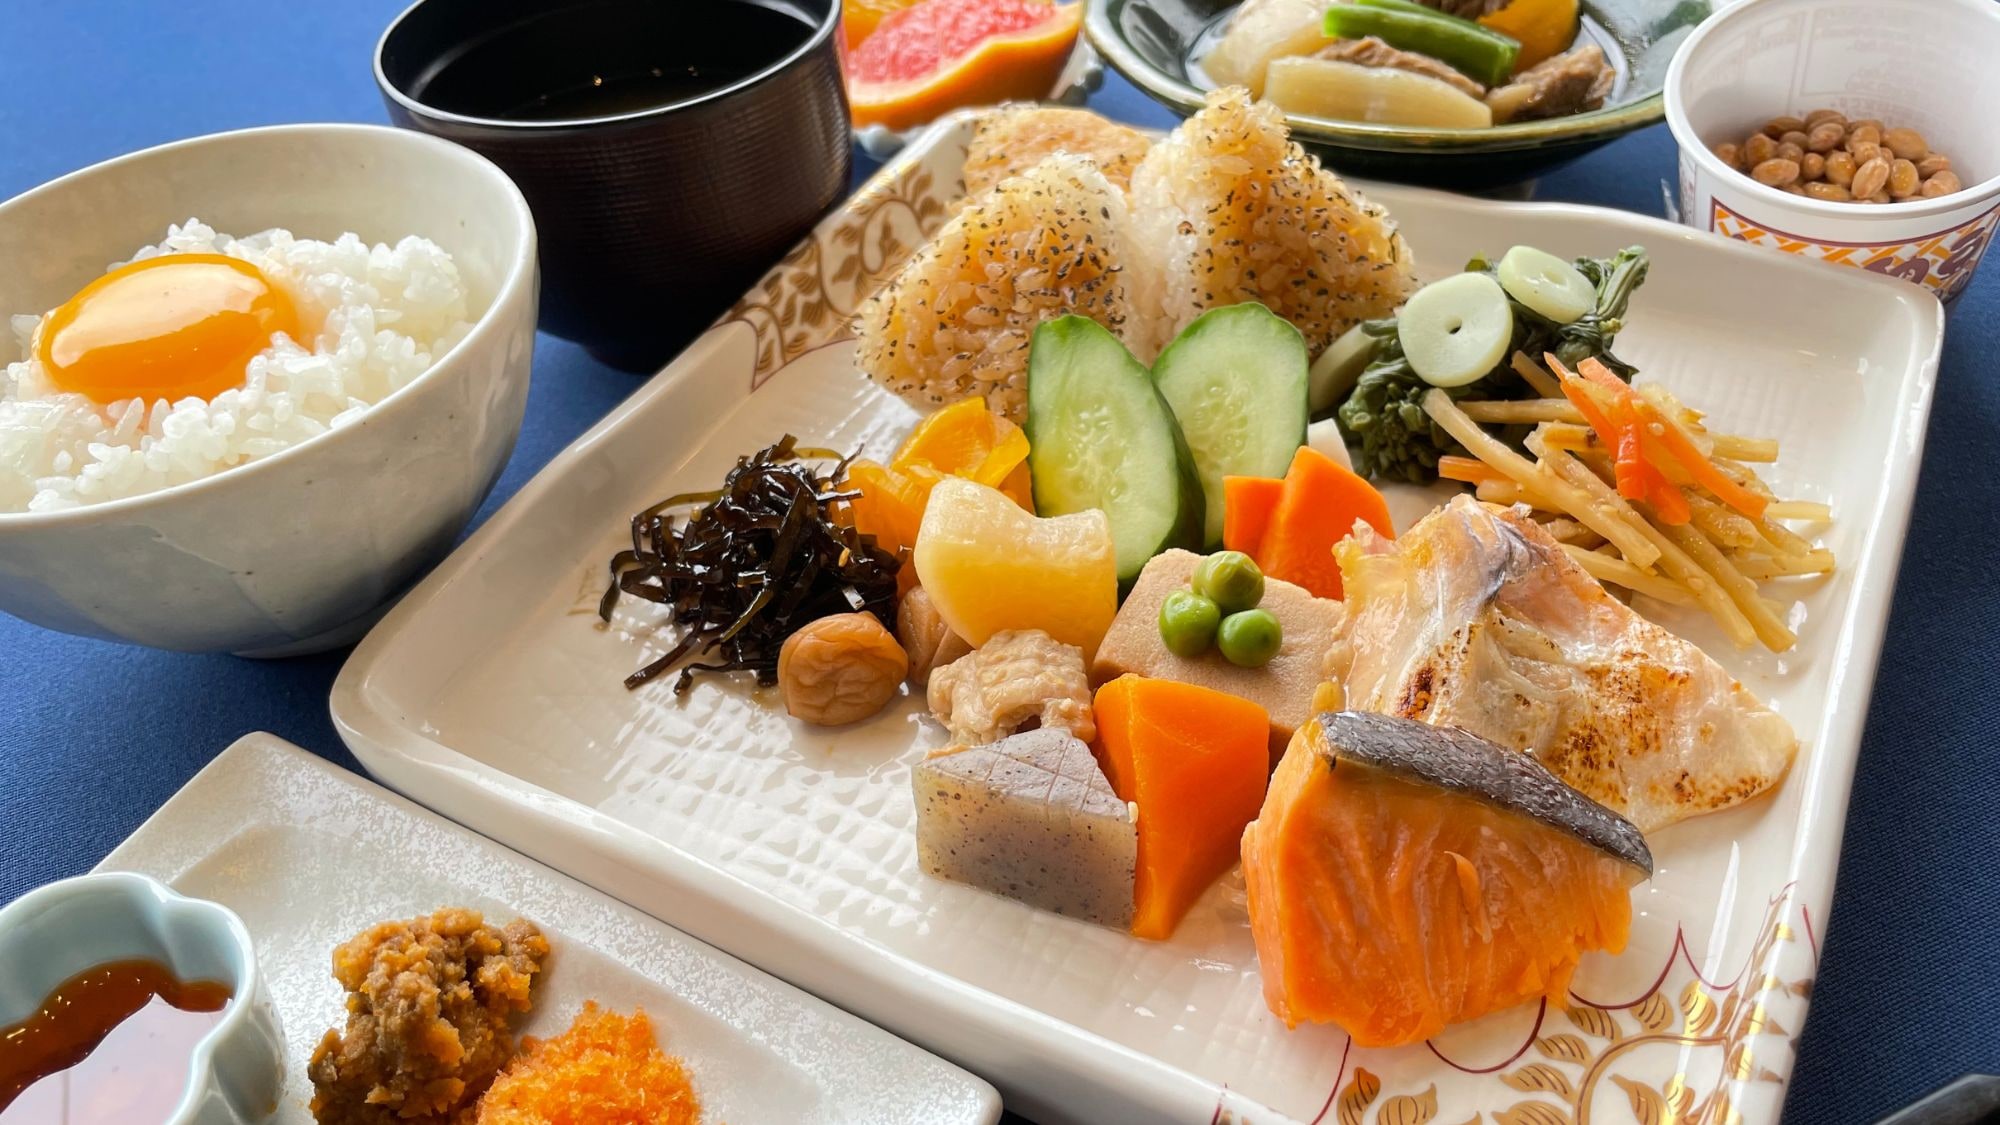 渗入身体的日本料理 让你的心放松